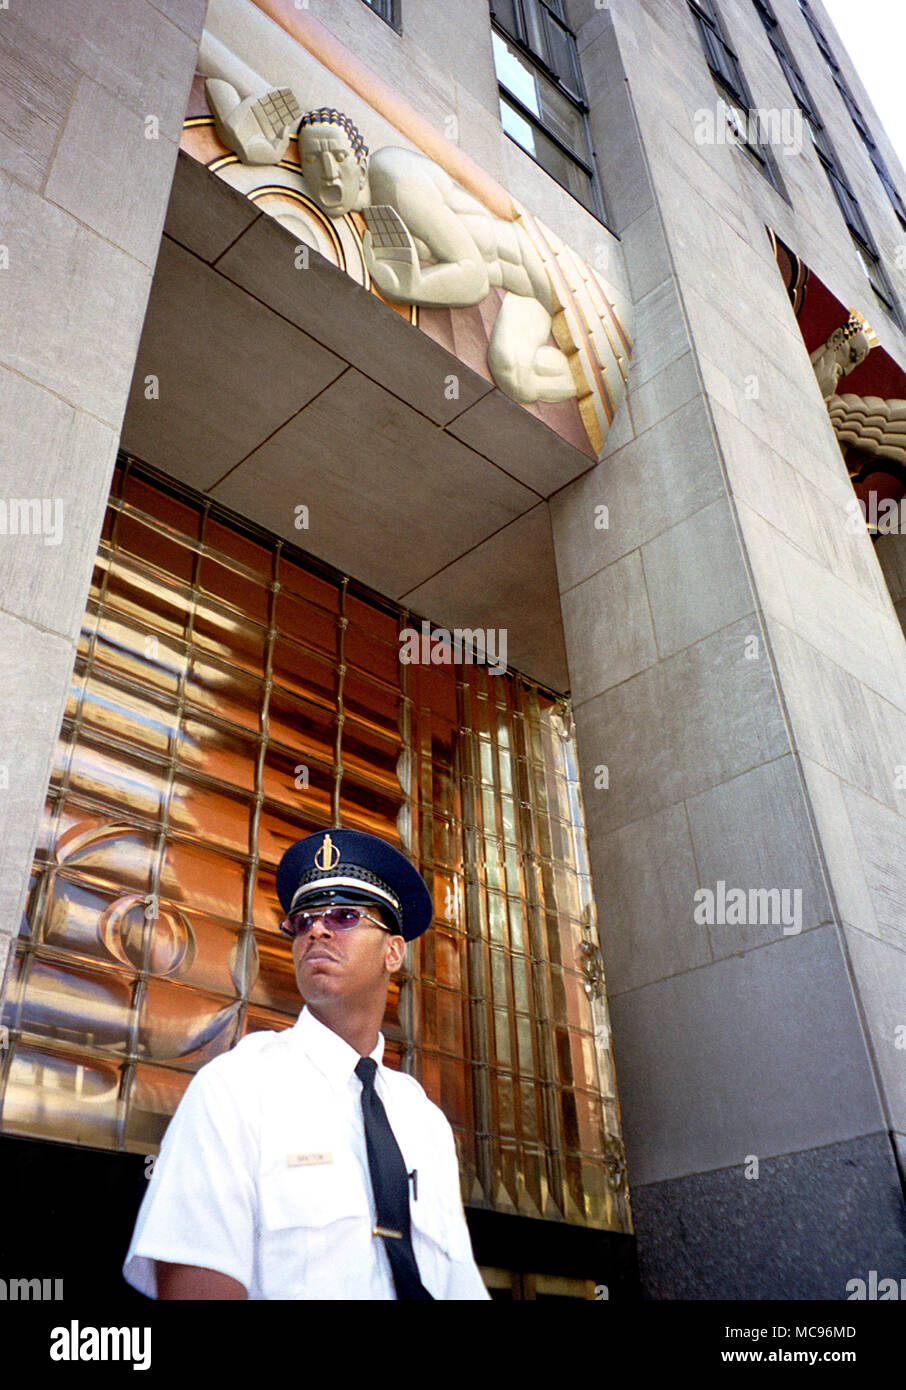 Eine haltbare suchen Security Guard steht außerhalb des Rockefeller Center in New York am Tag nach dem Terroranschlag auf das World Trade Center in New York City auf 9/11 Foto DON TONGE Fotograf Stockfoto